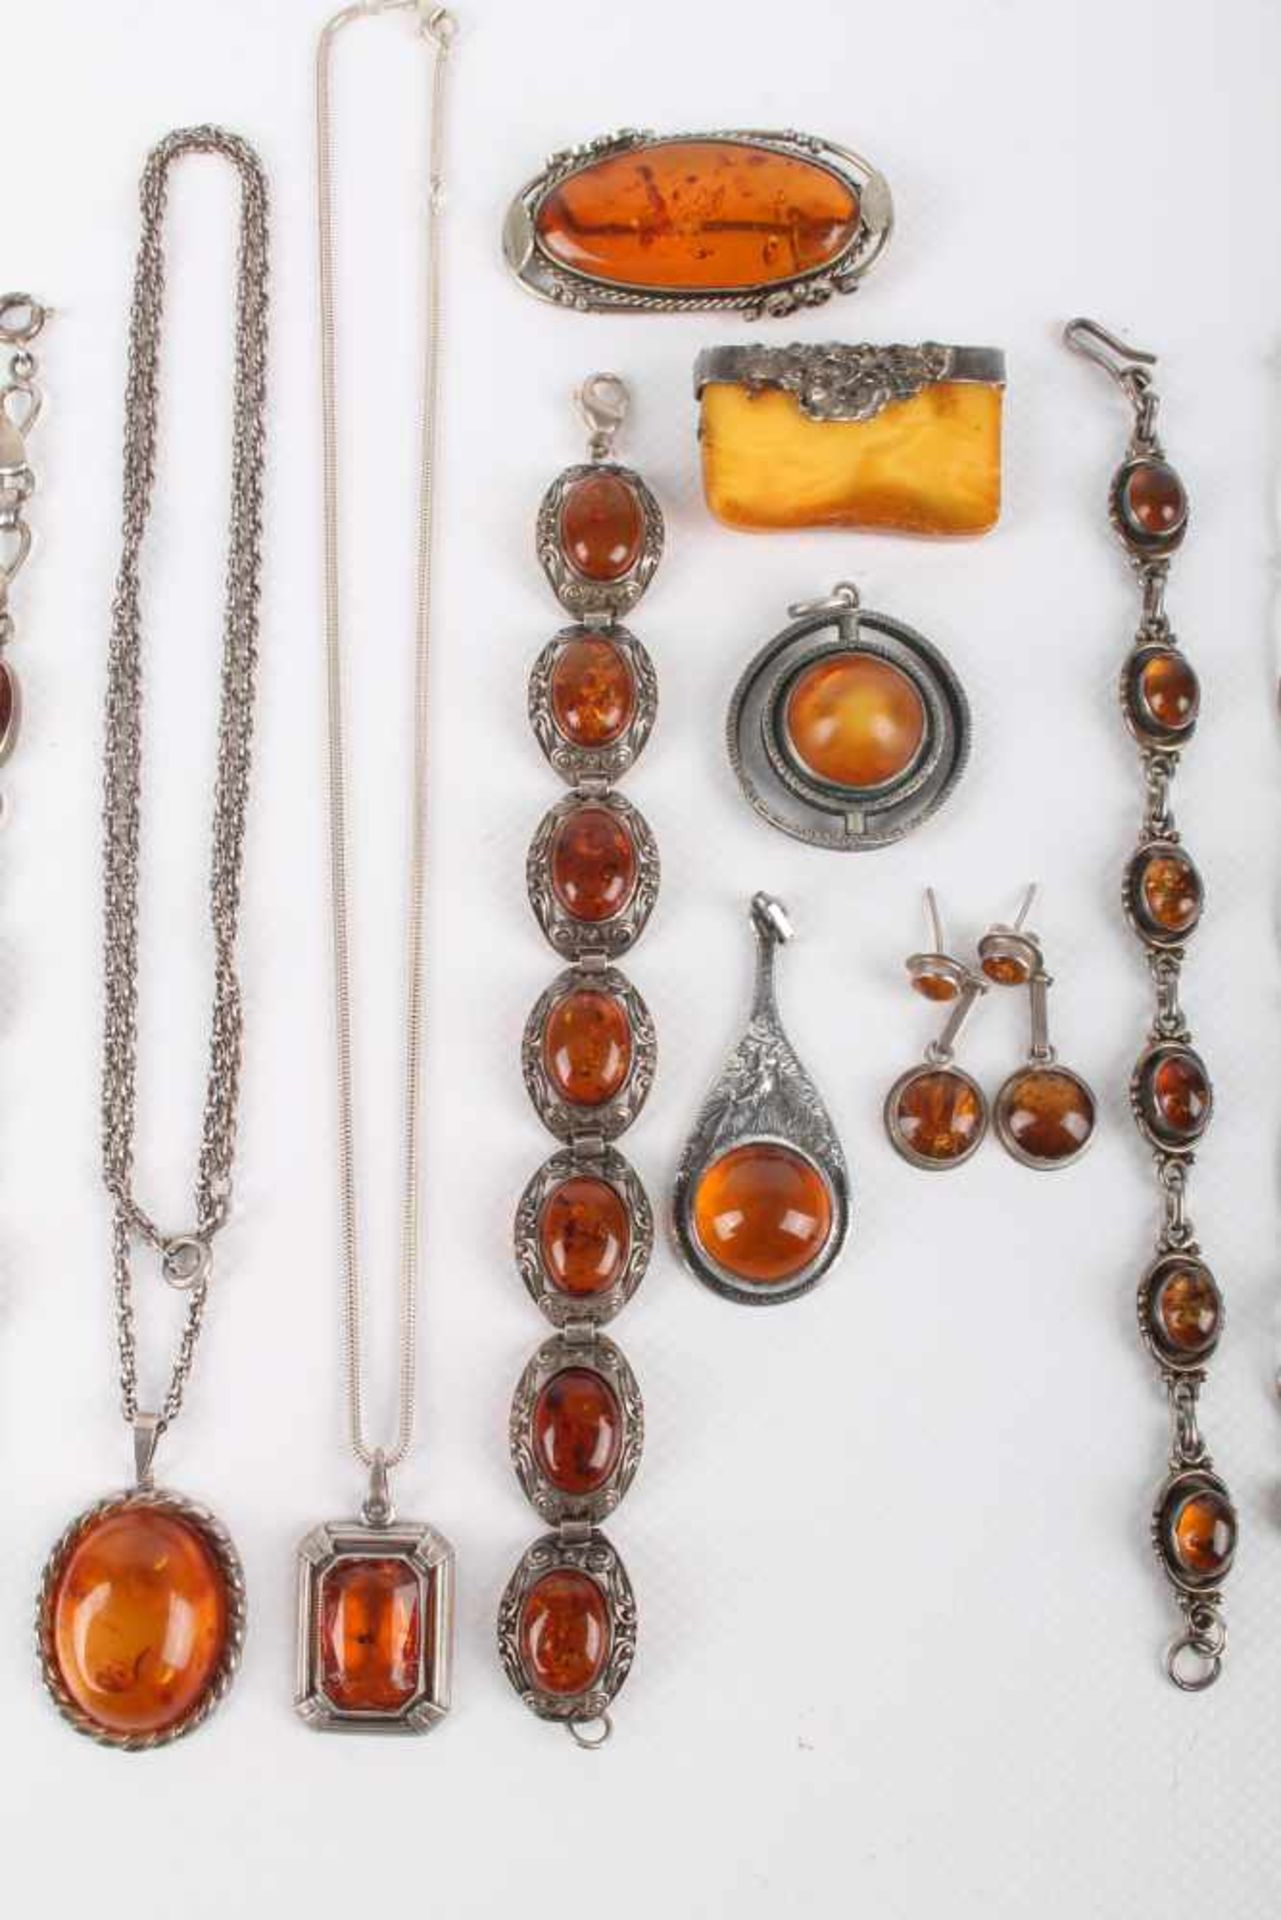 Bernstein Schmuckkonvolut, 17-teilig, teils antik, amber jewelry, partly antique, - Bild 3 aus 4